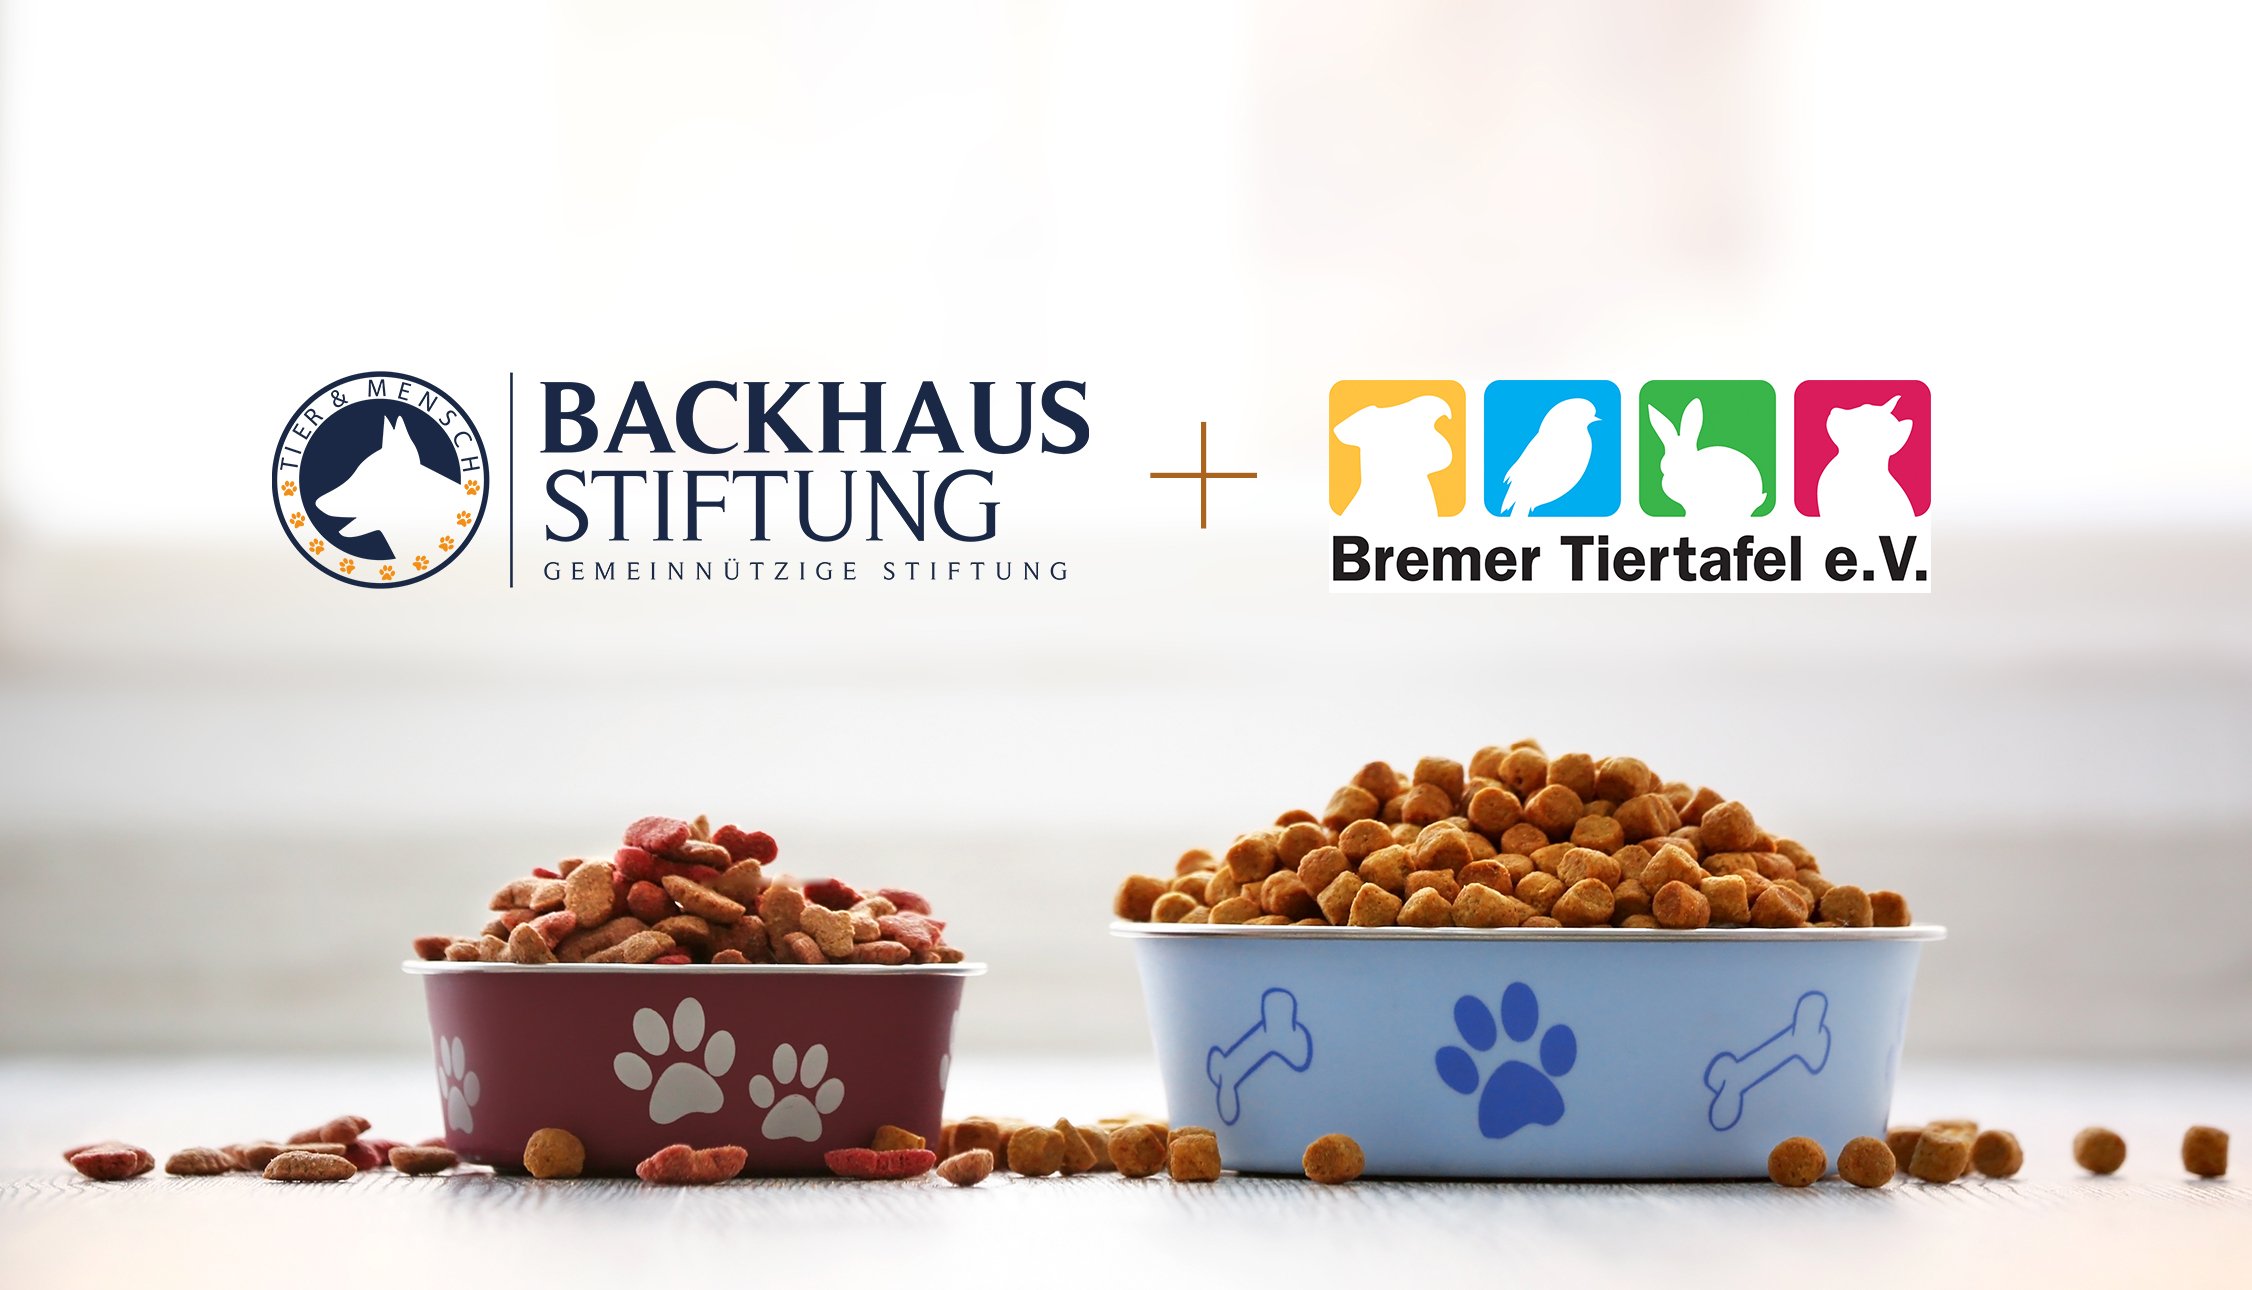 Backhaus Stiftung wird Fördermitglied bei Bremer Tiertafel e.V.